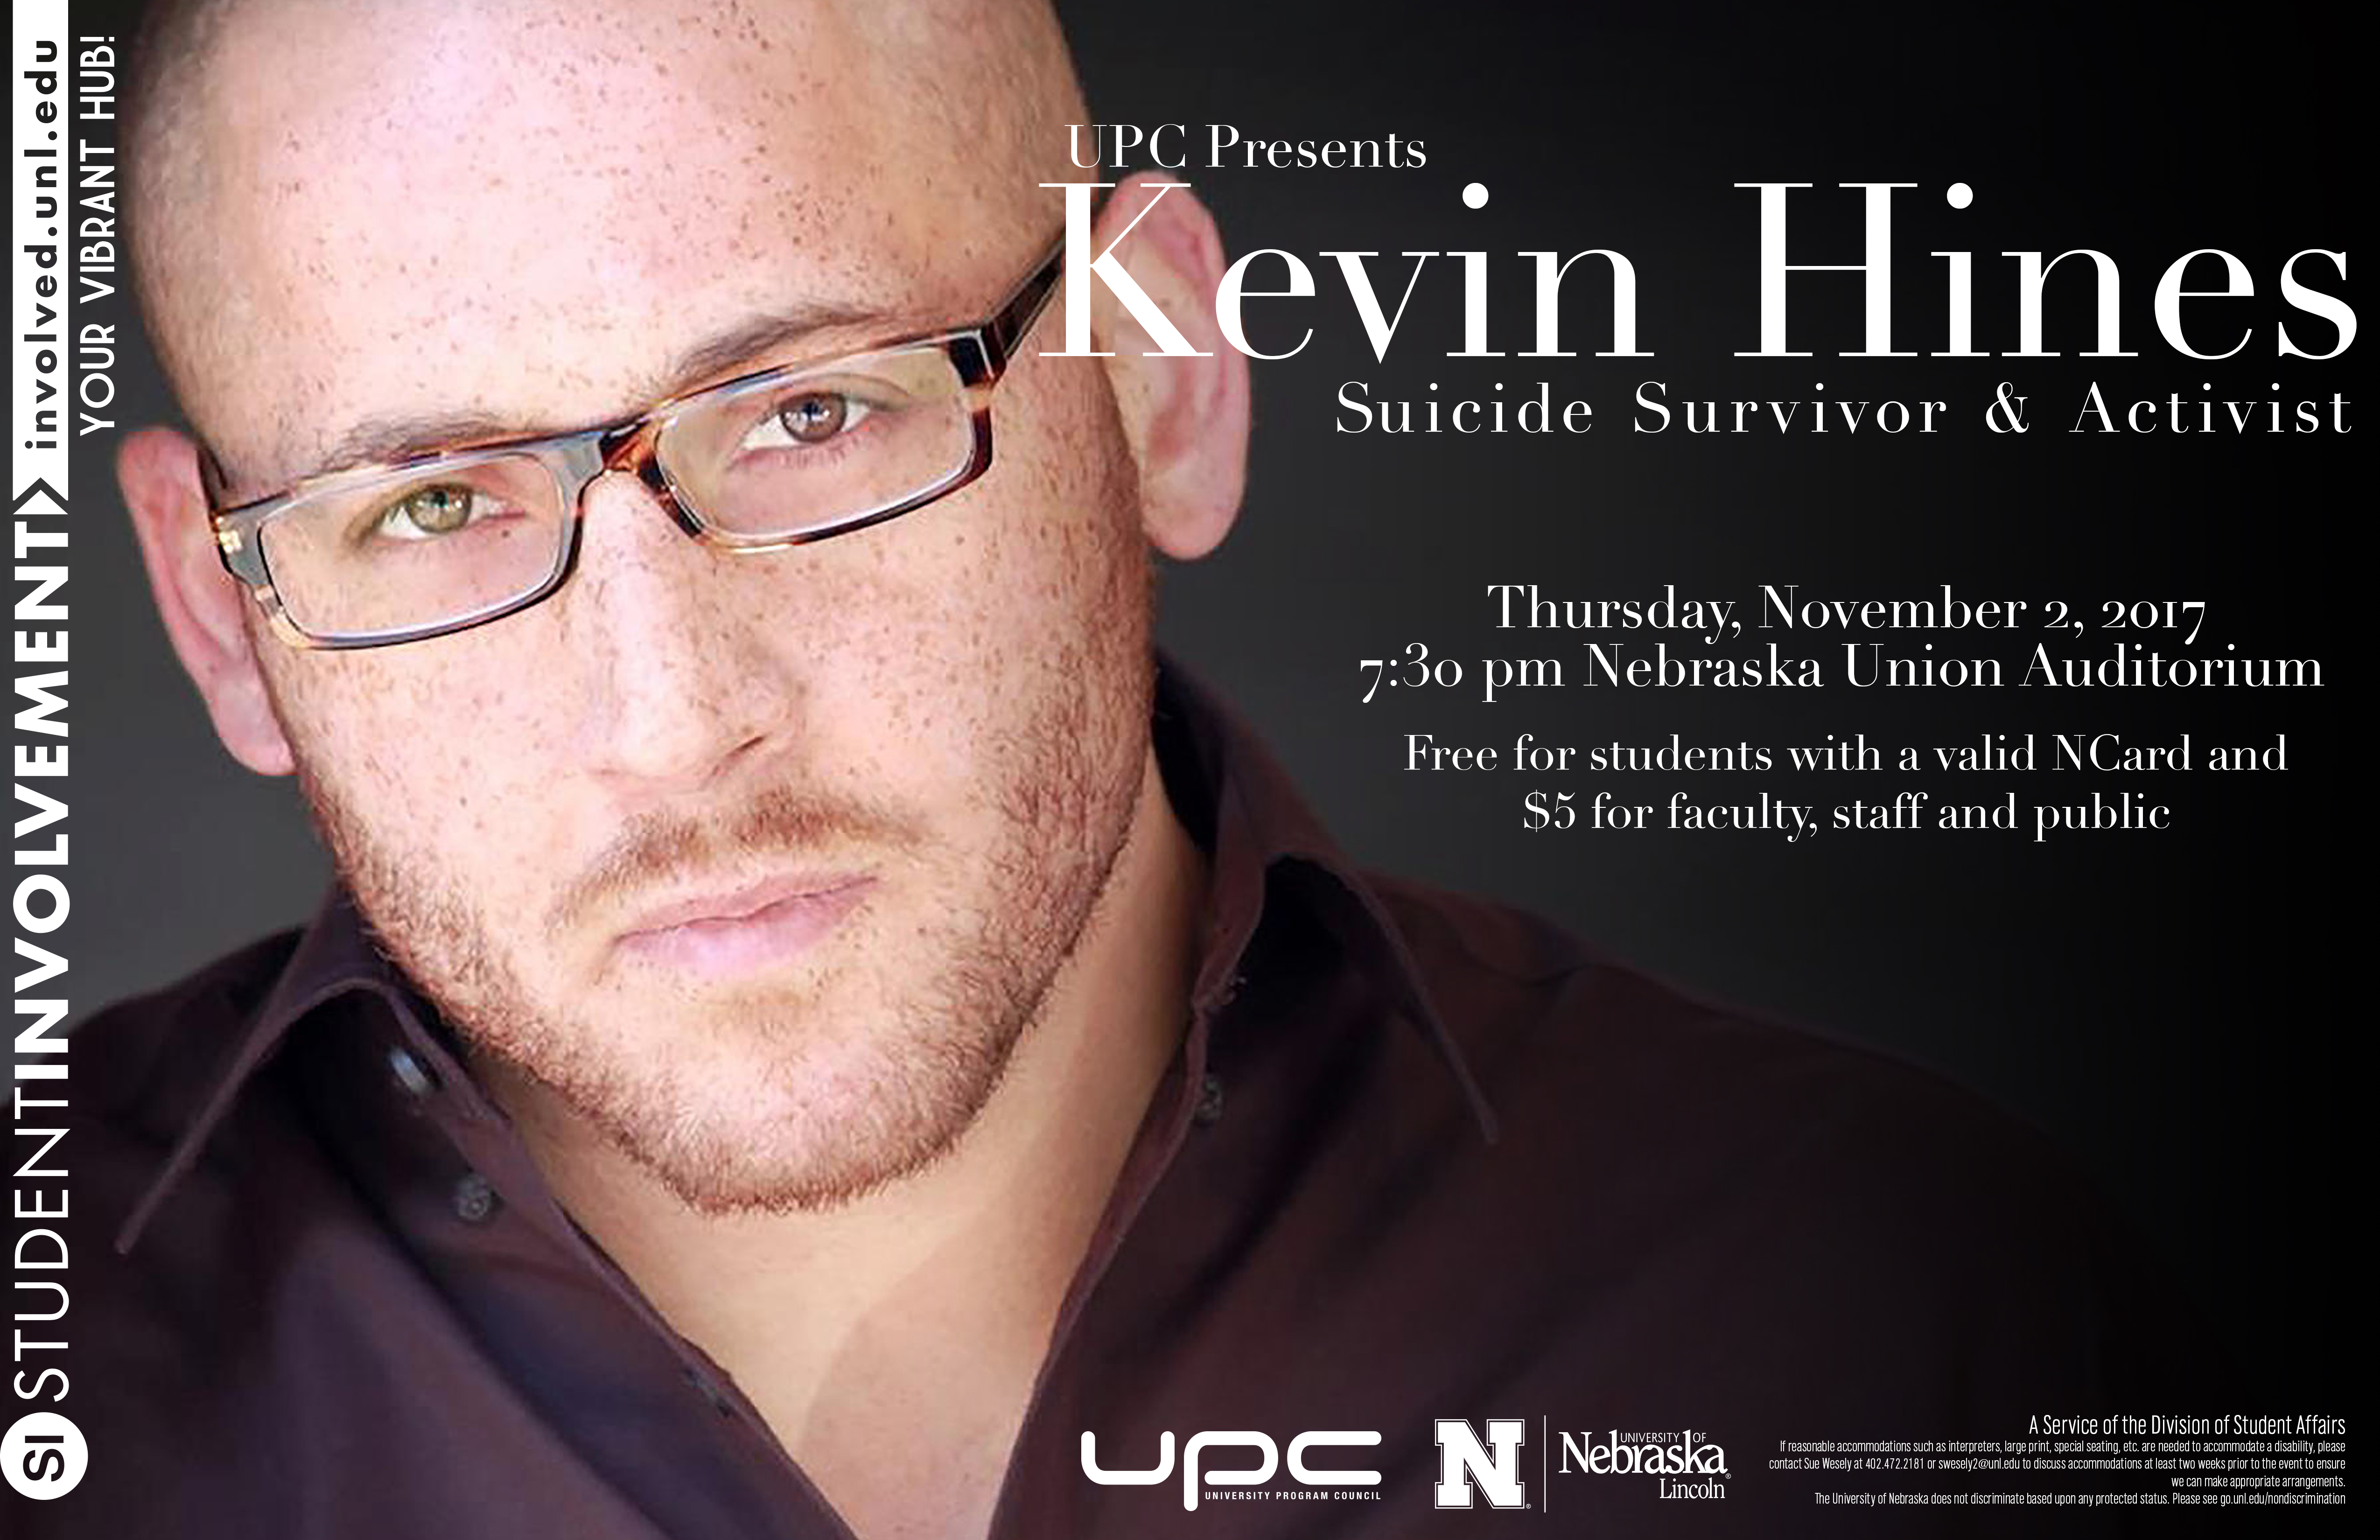 UPC Presents: Kevin Hines, suicide survivor and activist